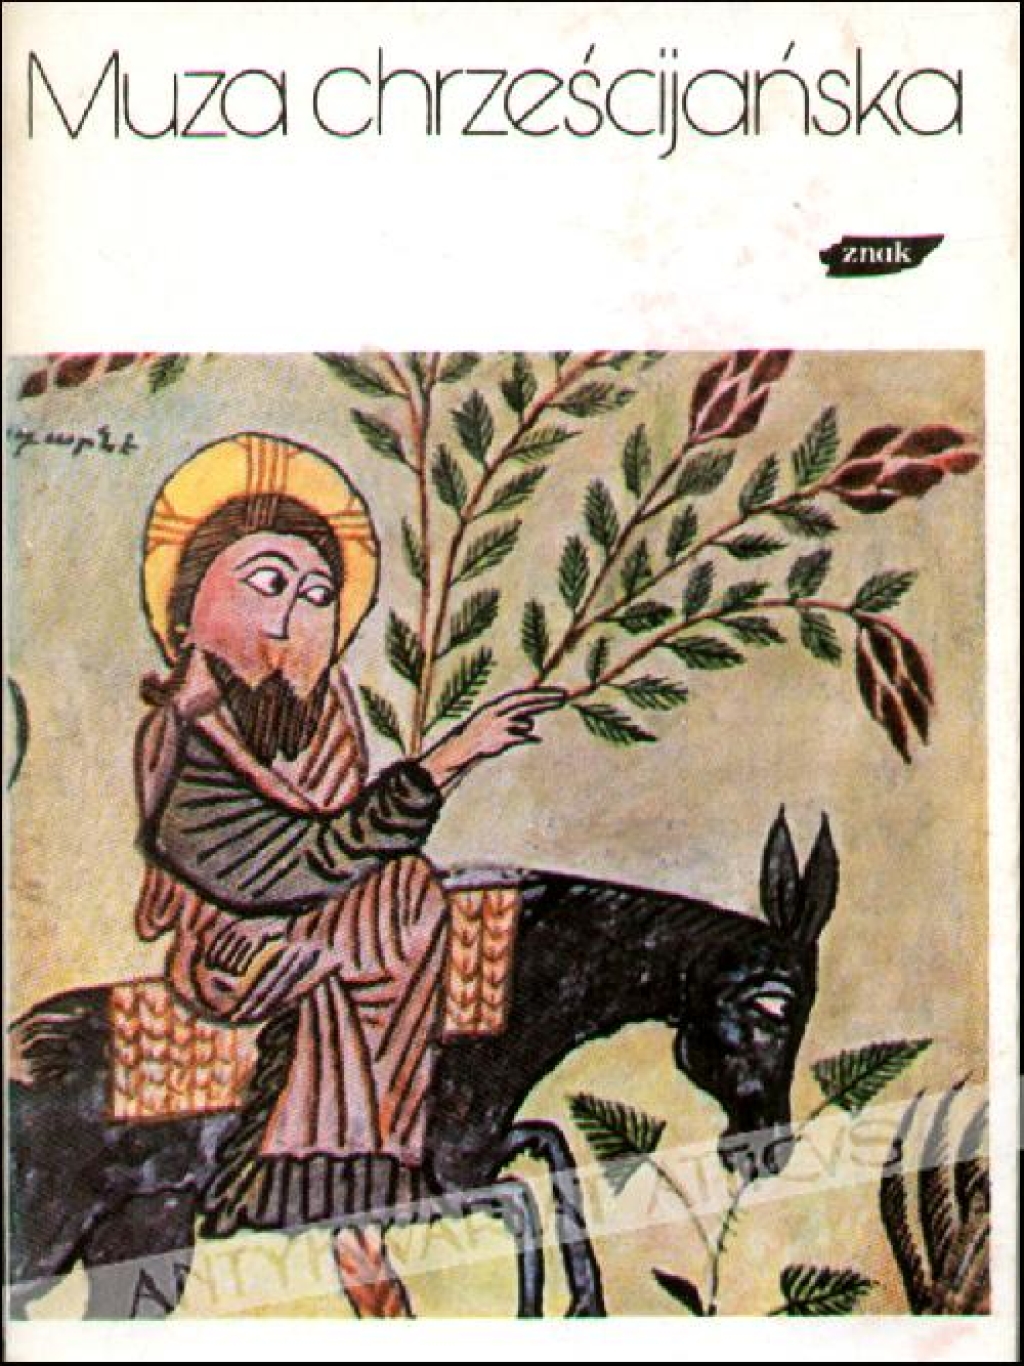 Muza chrześcijańska, t. I: poezja armeńska, syryjska i etiopska